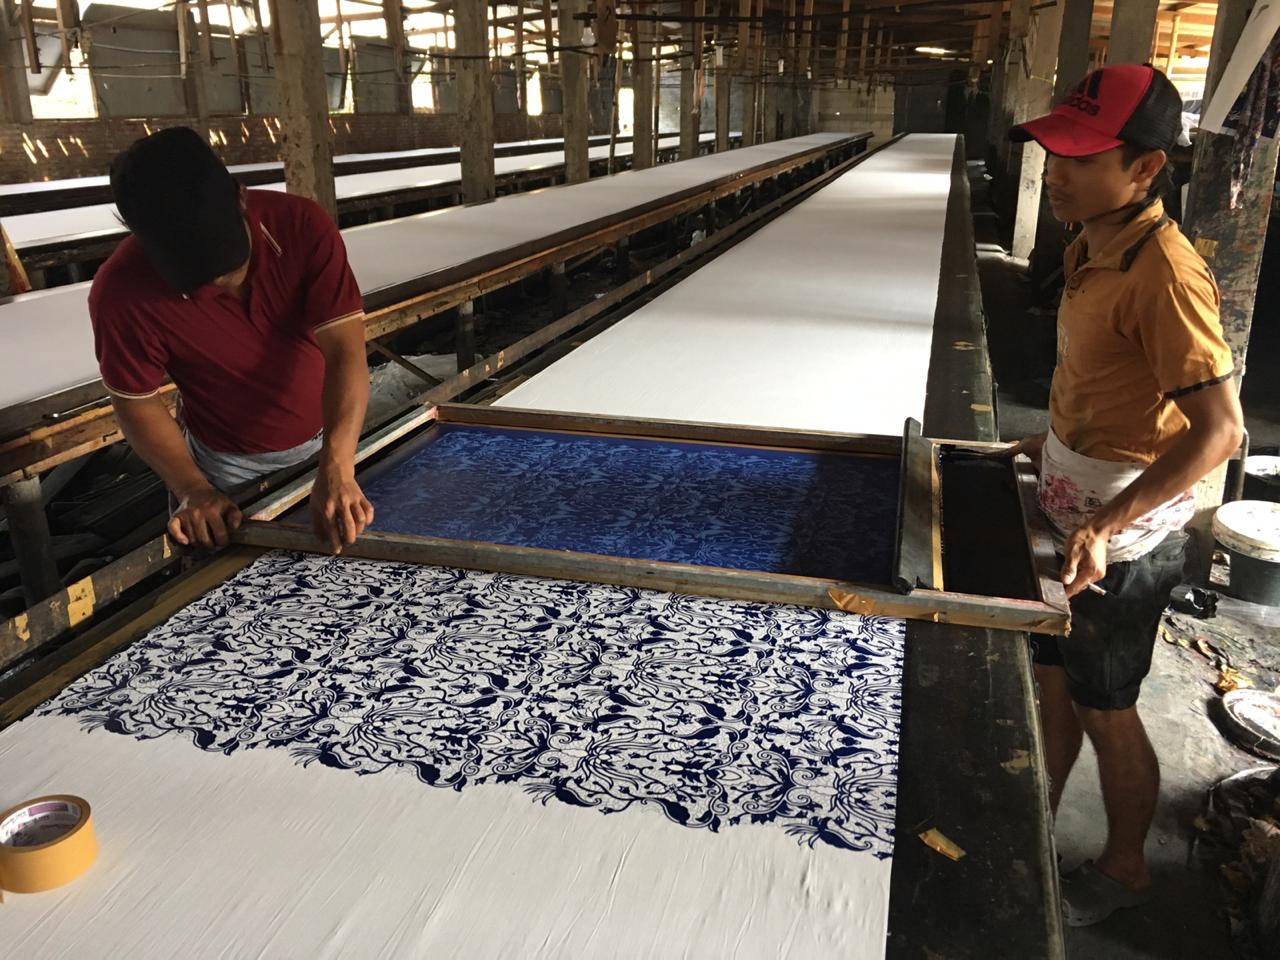 batik printing